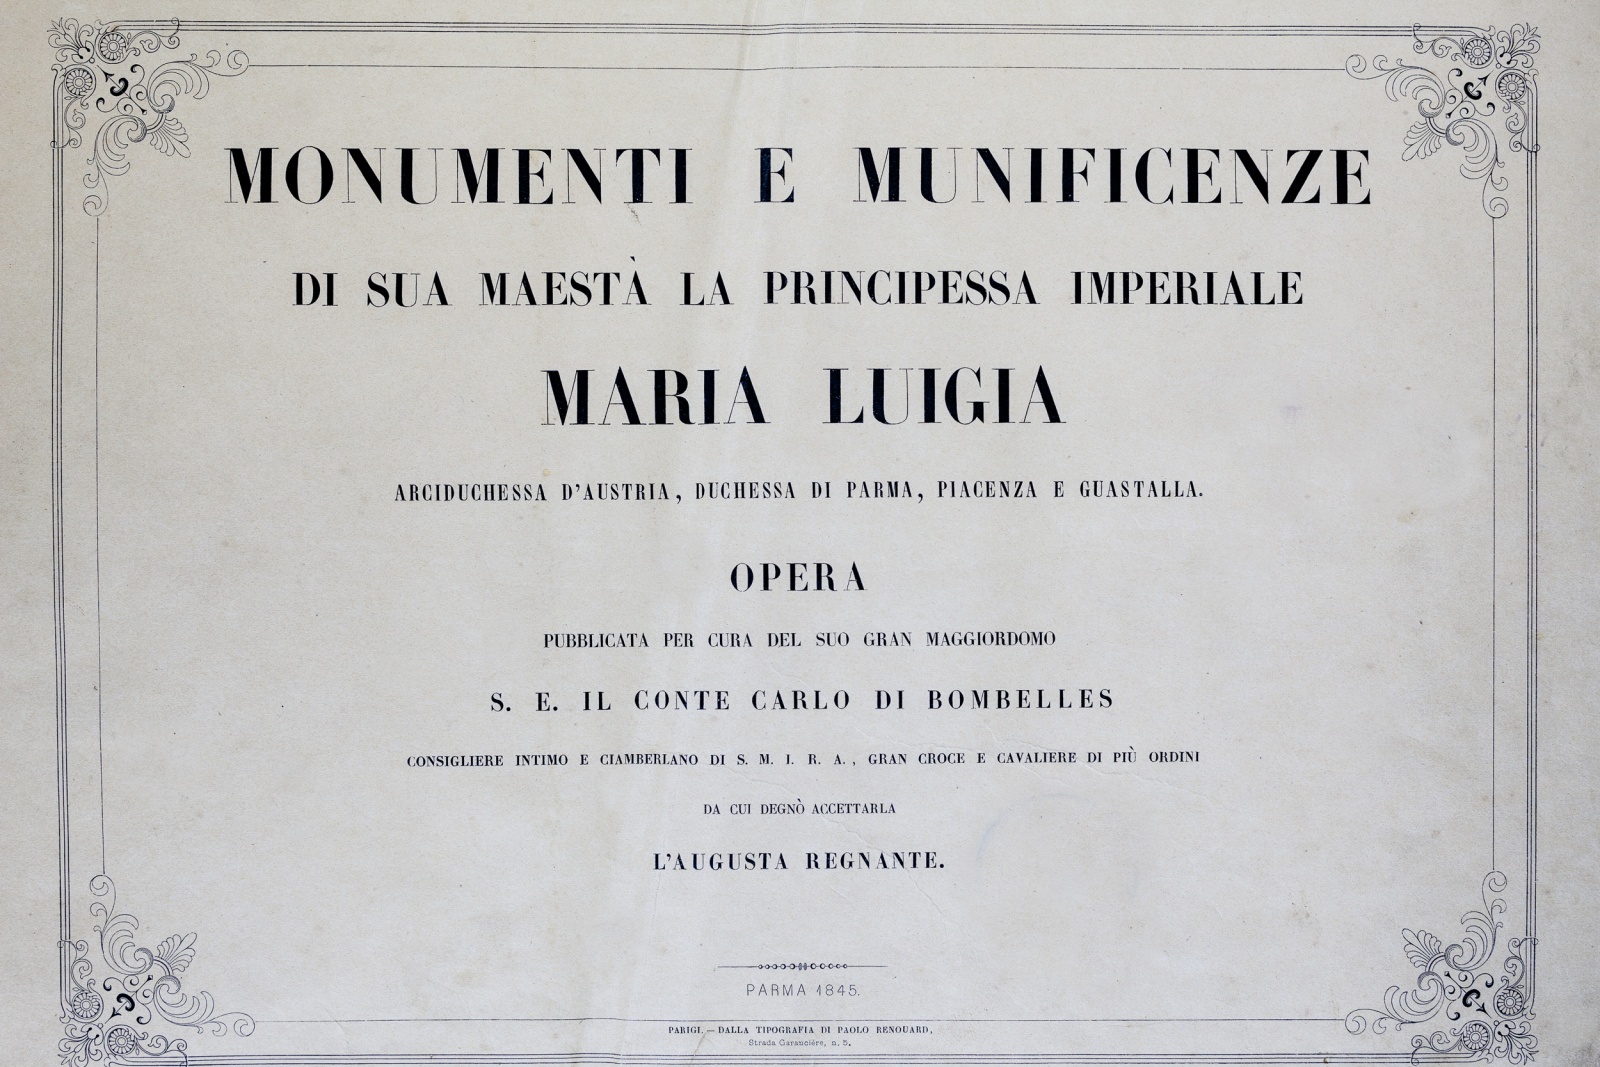 Riproduzione anastatica del frontespizio del volume, conservato all'Archivio di Stato di Parma.